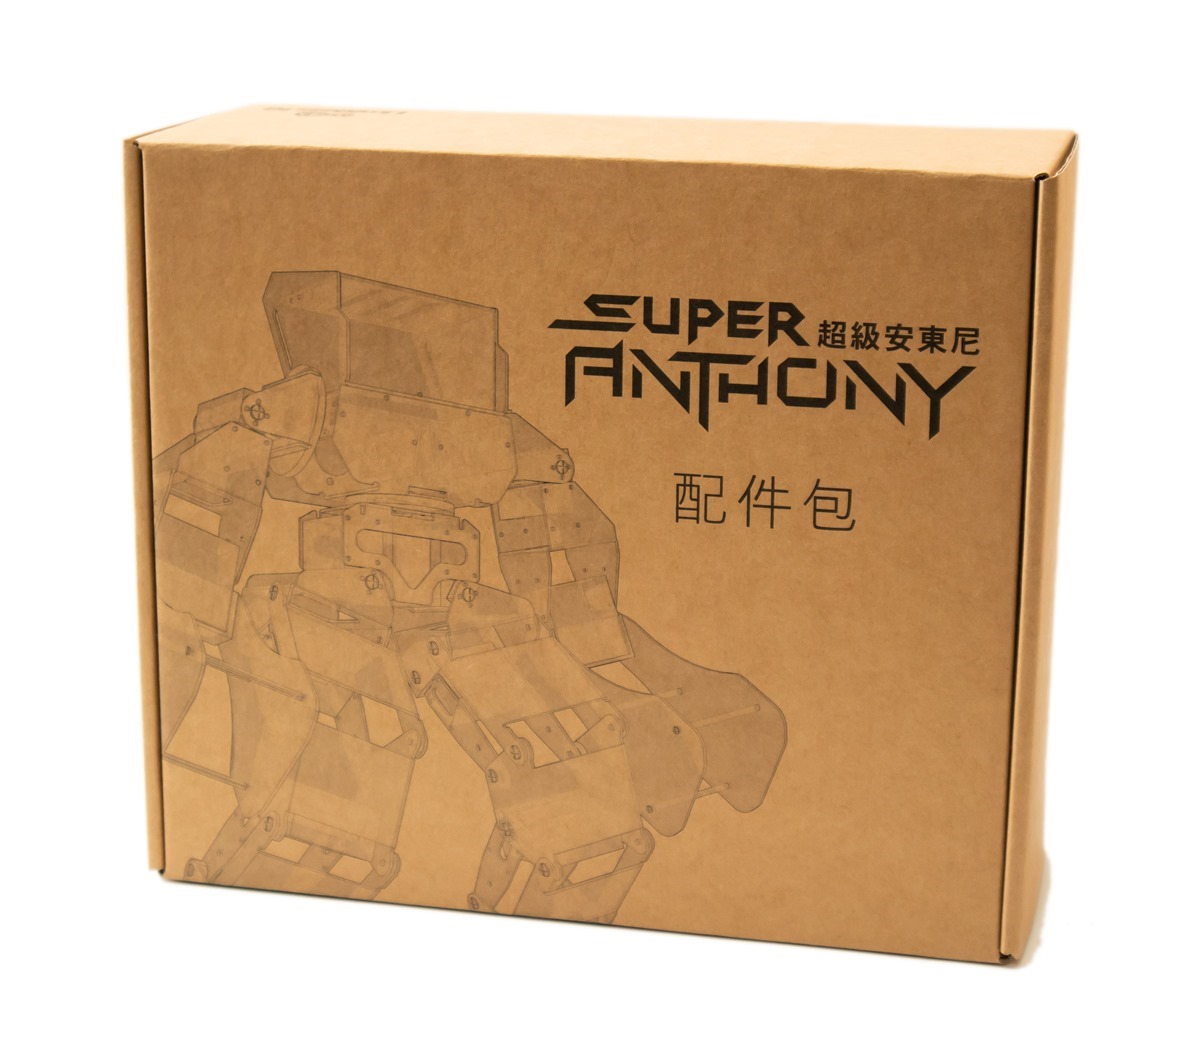 一圓大男孩的兒時夢！超級安東尼 Super Anthony 格鬥機器人開箱動手玩 @3C 達人廖阿輝